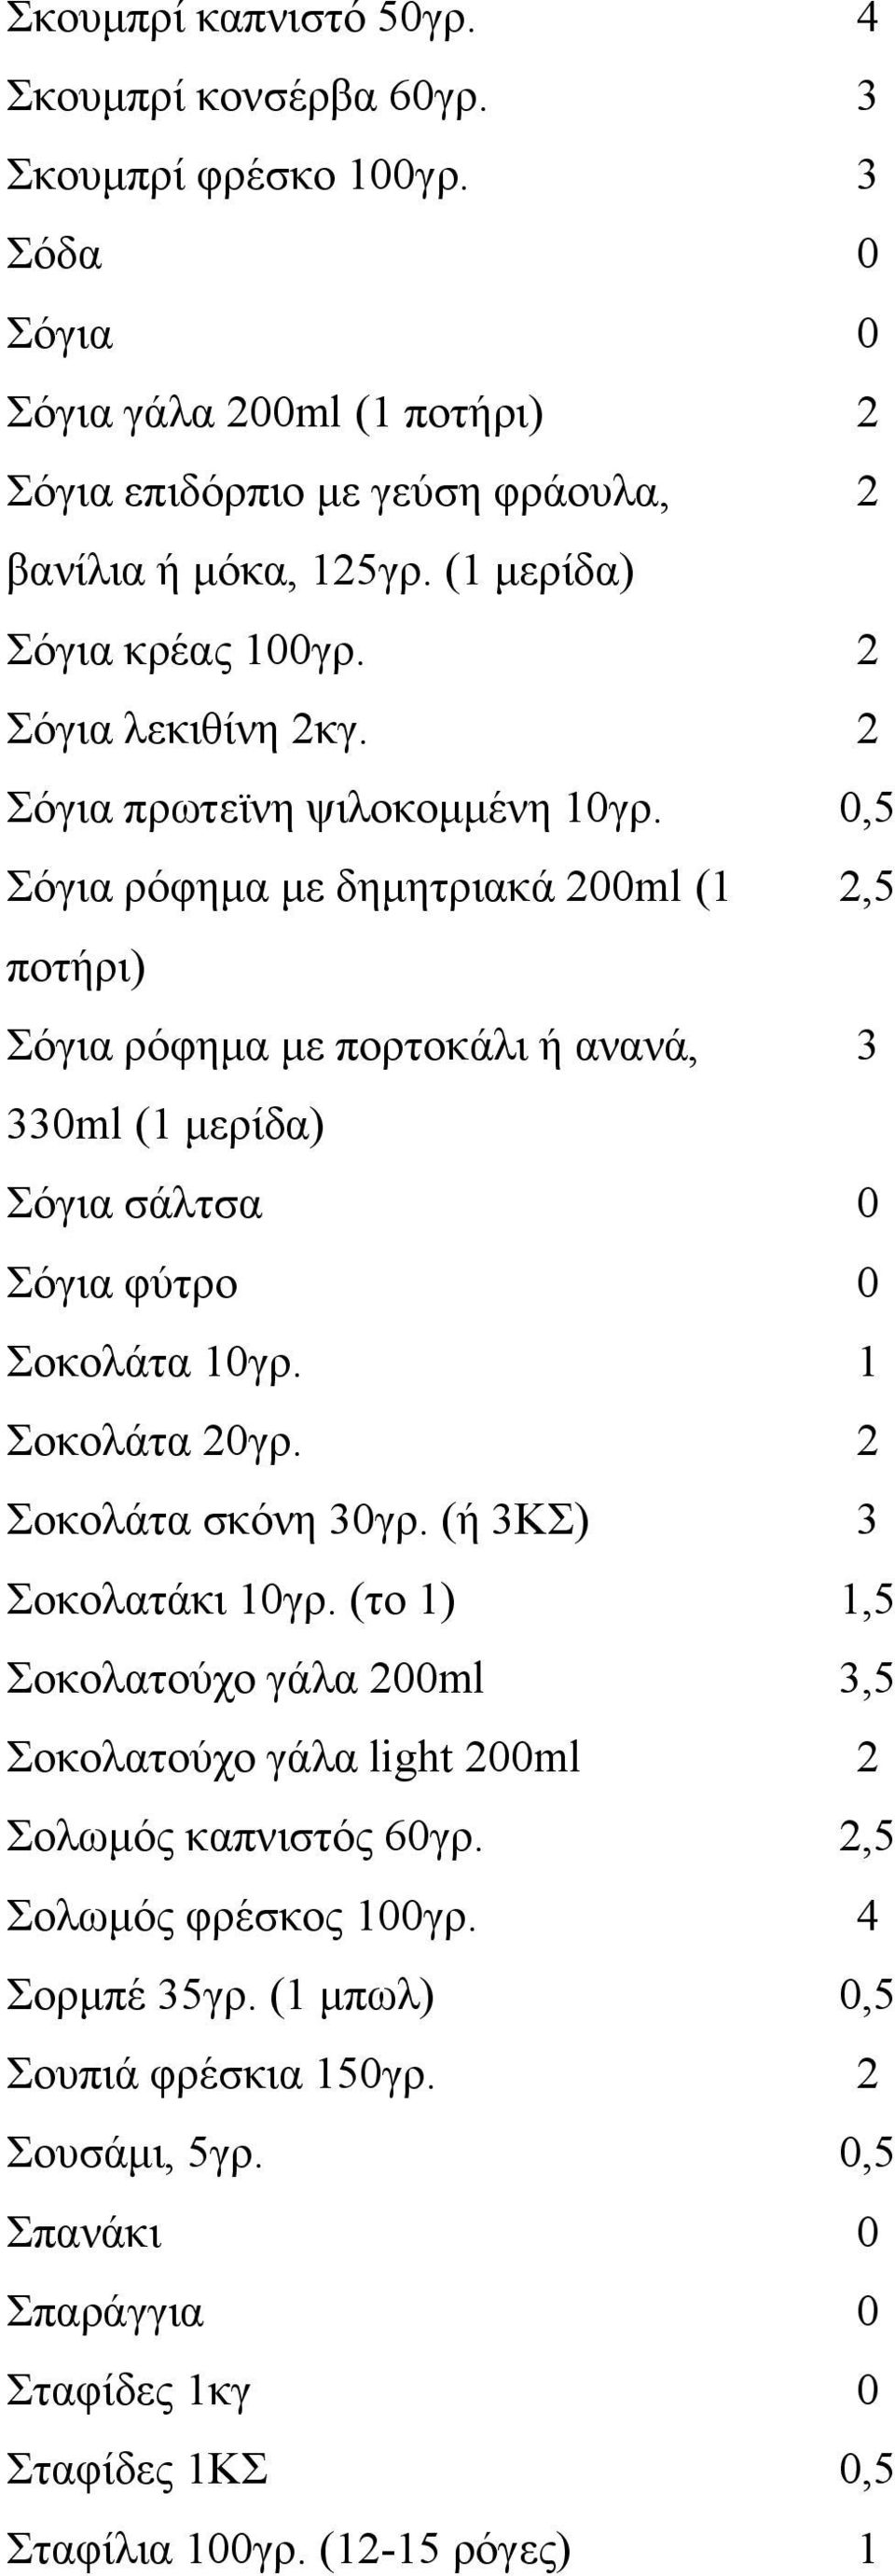 0,5 Σόγια ρόφημα με δημητριακά 200ml (1 2,5 ποτήρι) Σόγια ρόφημα με πορτοκάλι ή ανανά, 3 330ml (1 μερίδα) Σόγια σάλτσα 0 Σόγια φύτρο 0 Σοκολάτα 10γρ. 1 Σοκολάτα 20γρ. 2 Σοκολάτα σκόνη 30γρ.